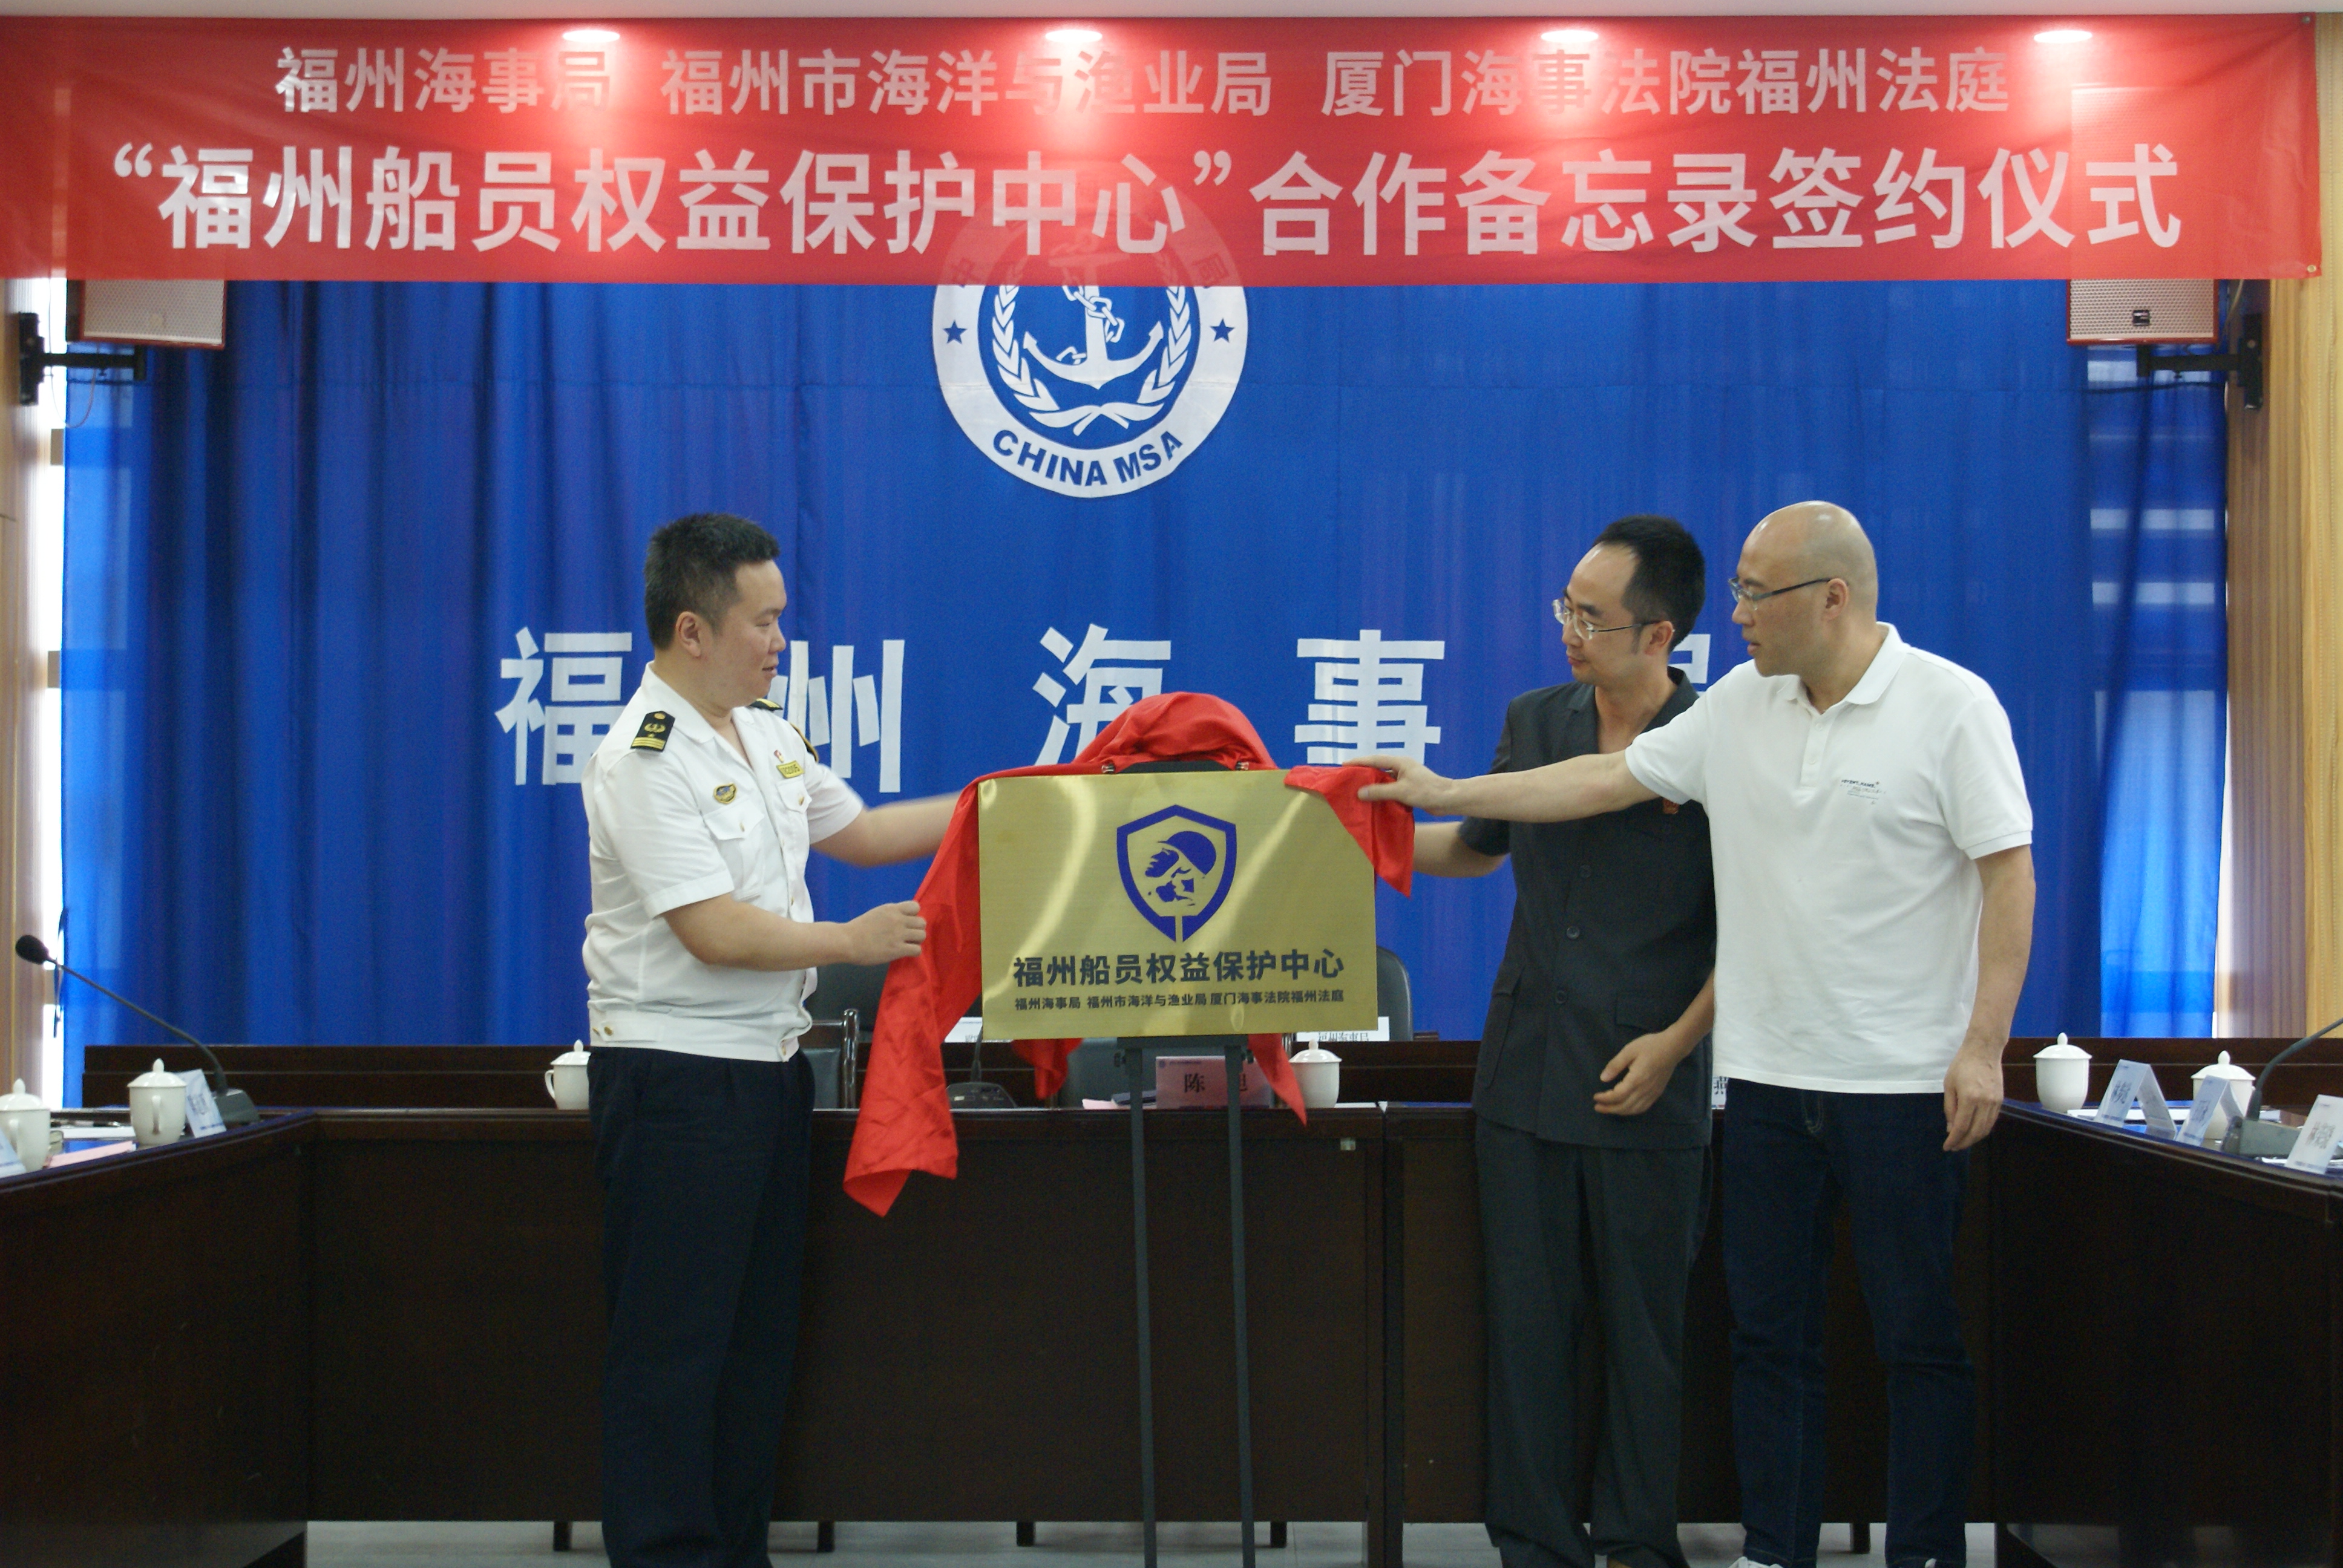 福建省内首个船员权益保护中心正式成立